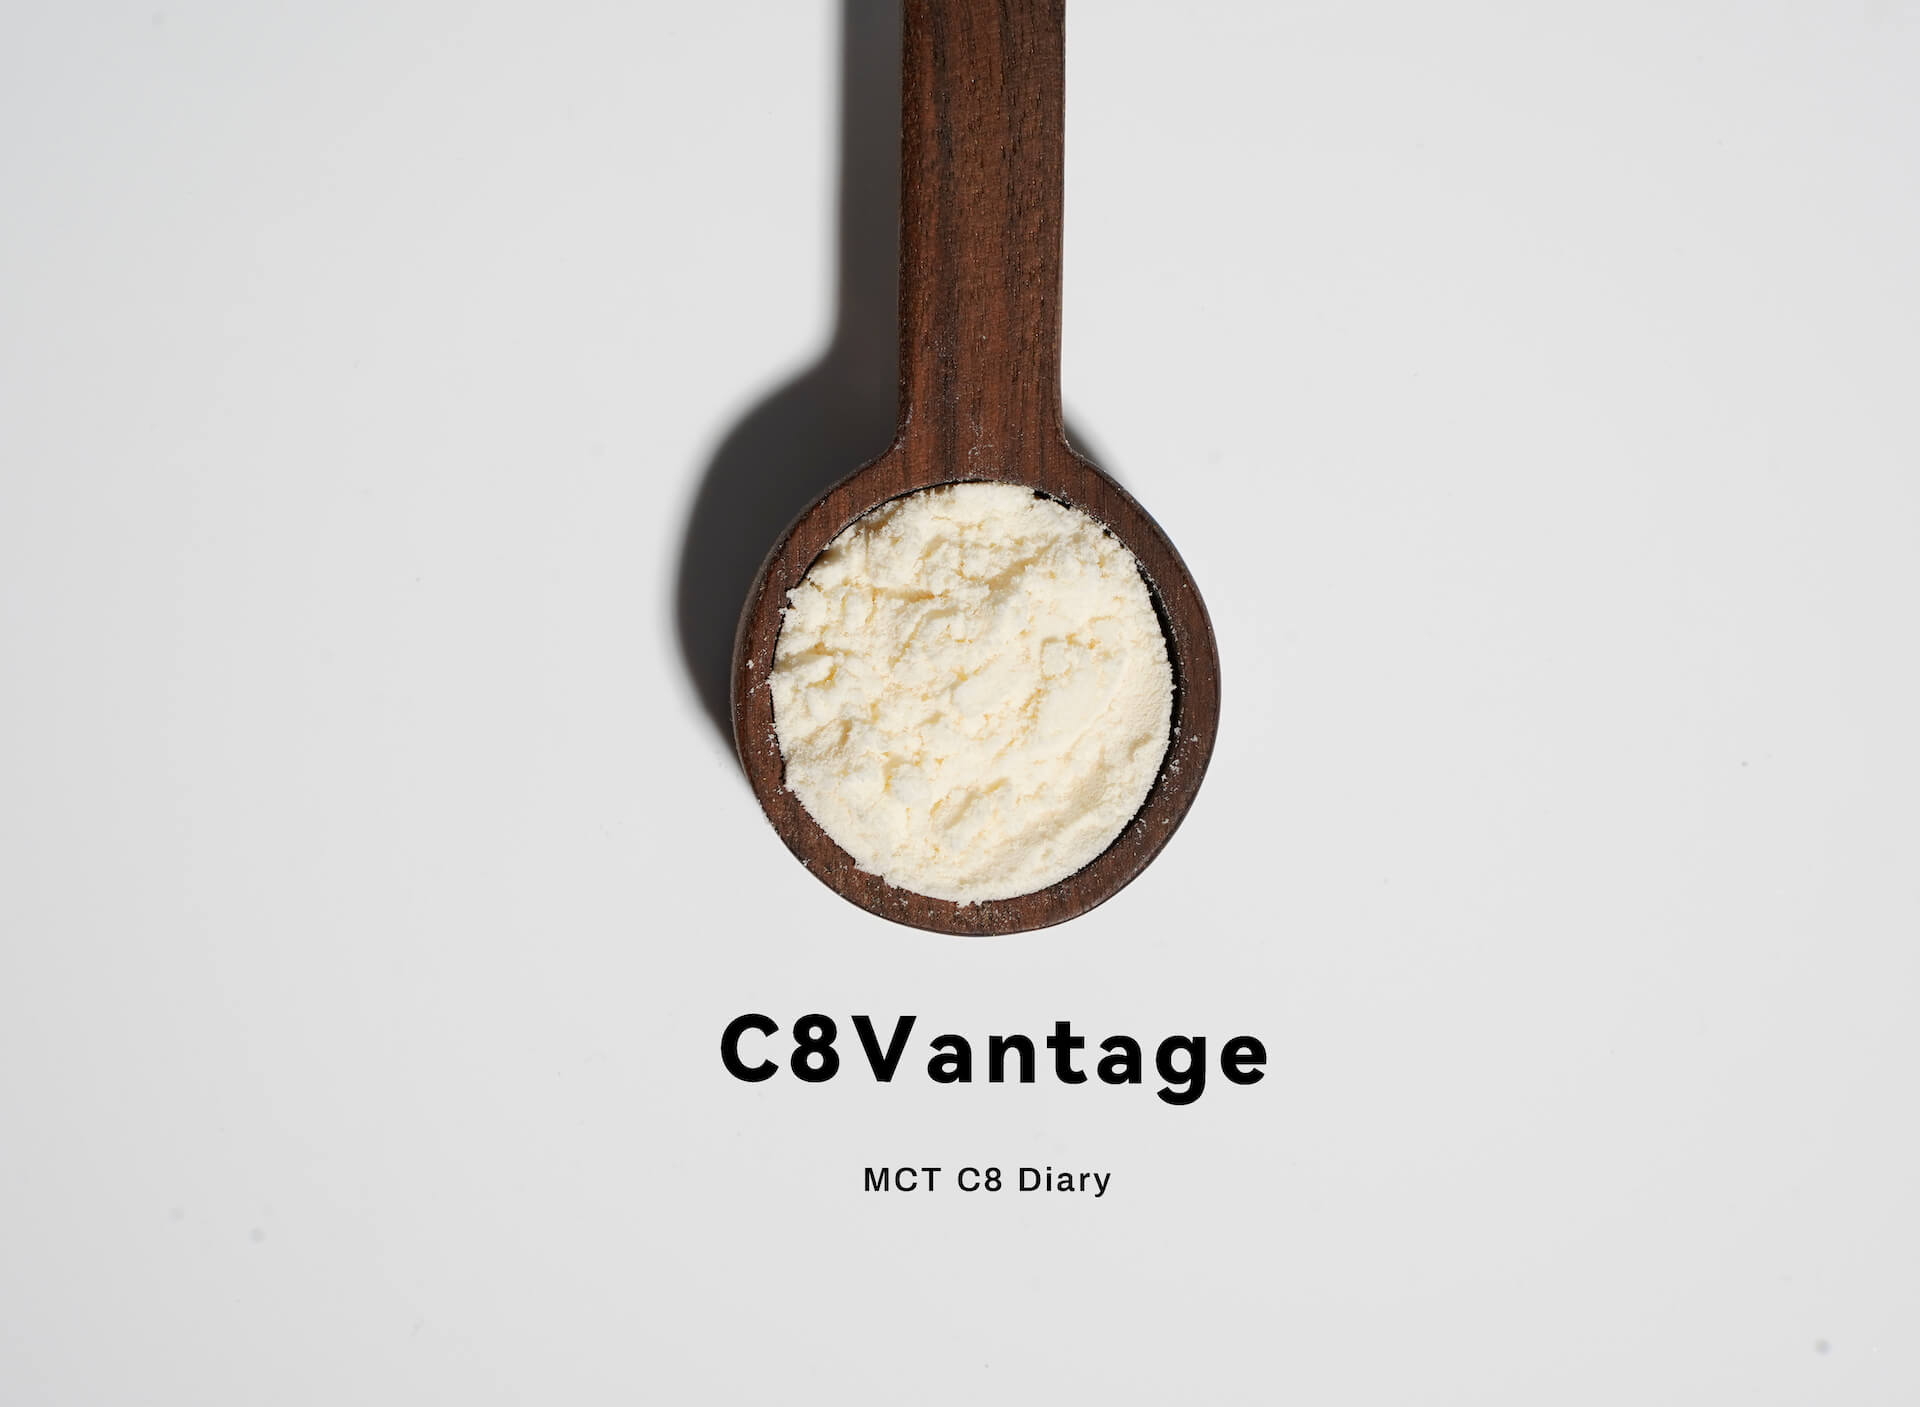 C8 Vantage®